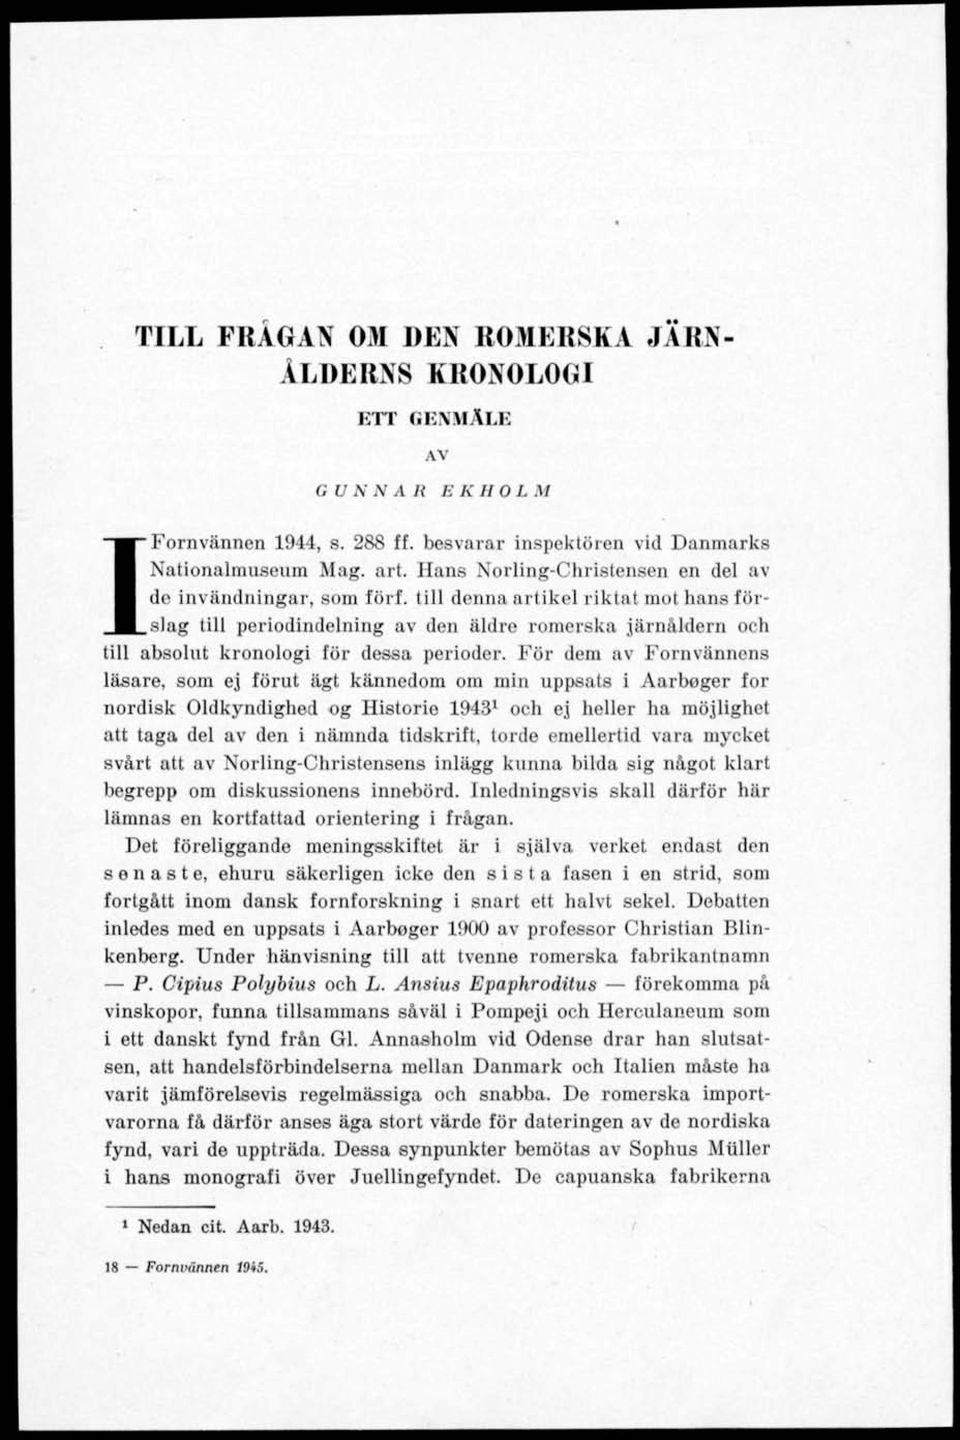 till denna artikel riktat mot hans förslag till periodindelning av den äldre romerska järnåldern och till absolut kronologi för dessa perioder.